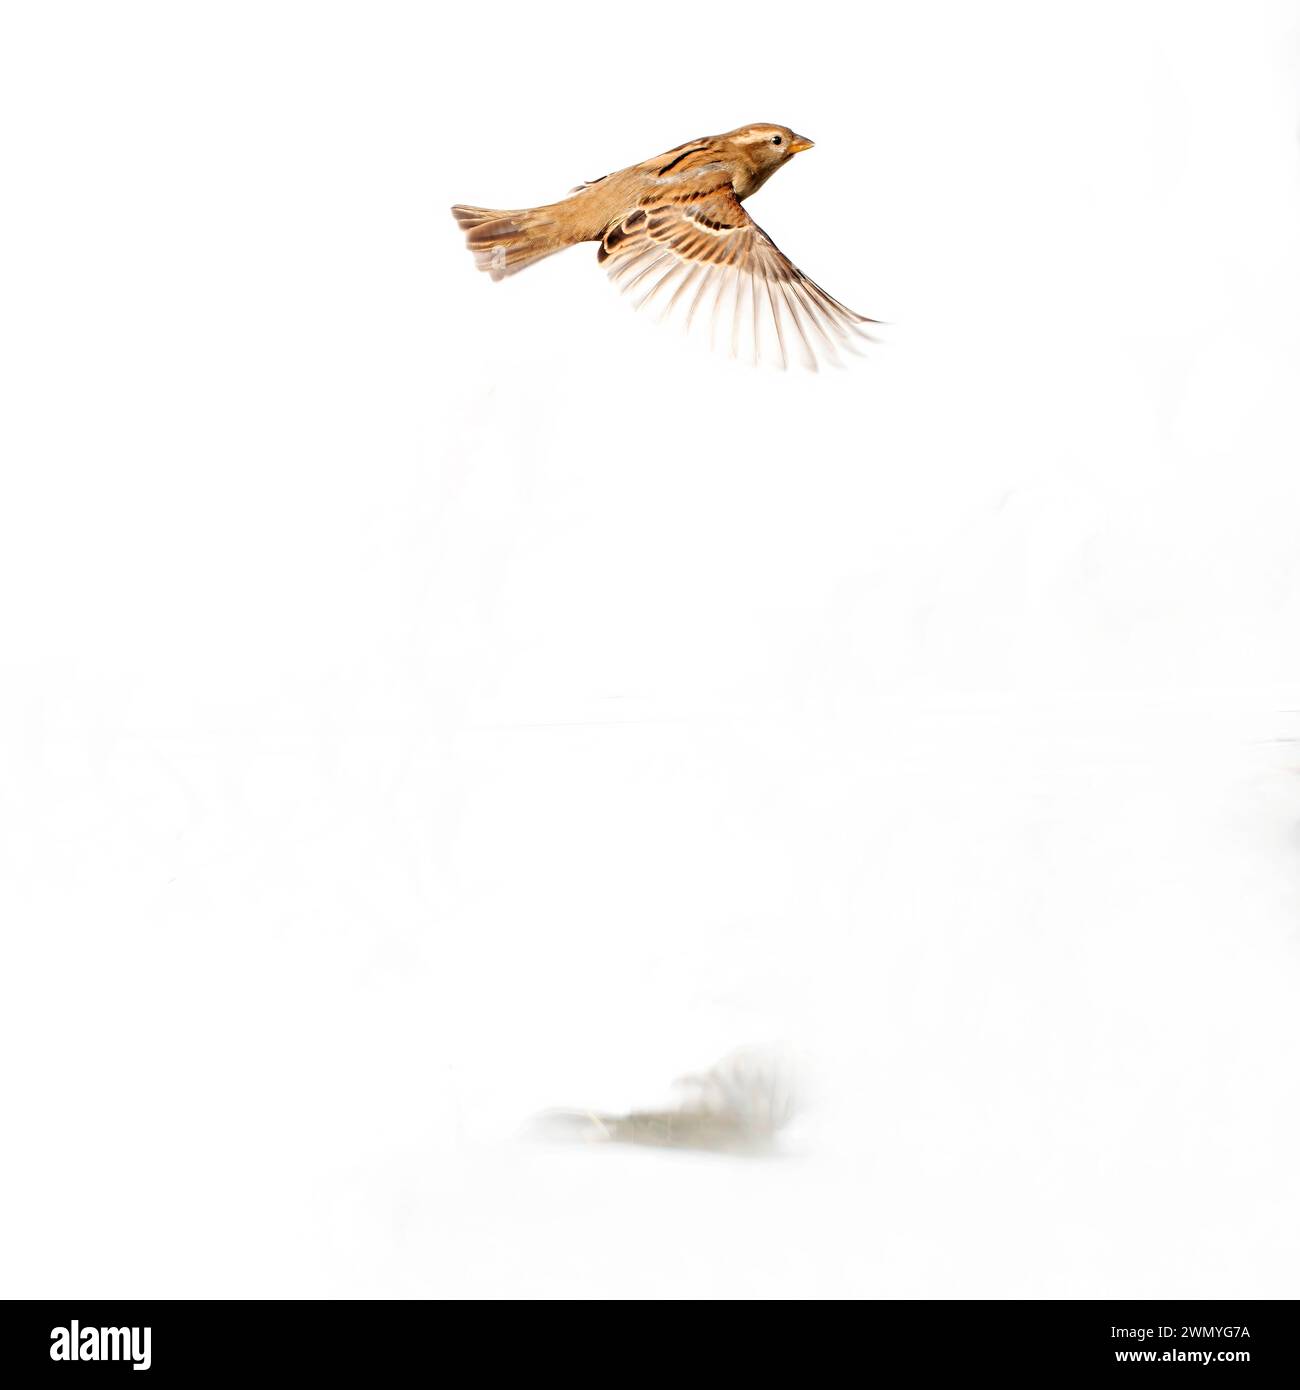 Ein einsamer Haussperling schwingt mit weit ausgebreiteten Flügeln, isoliert auf einem rein weißen Hintergrund. Stockfoto